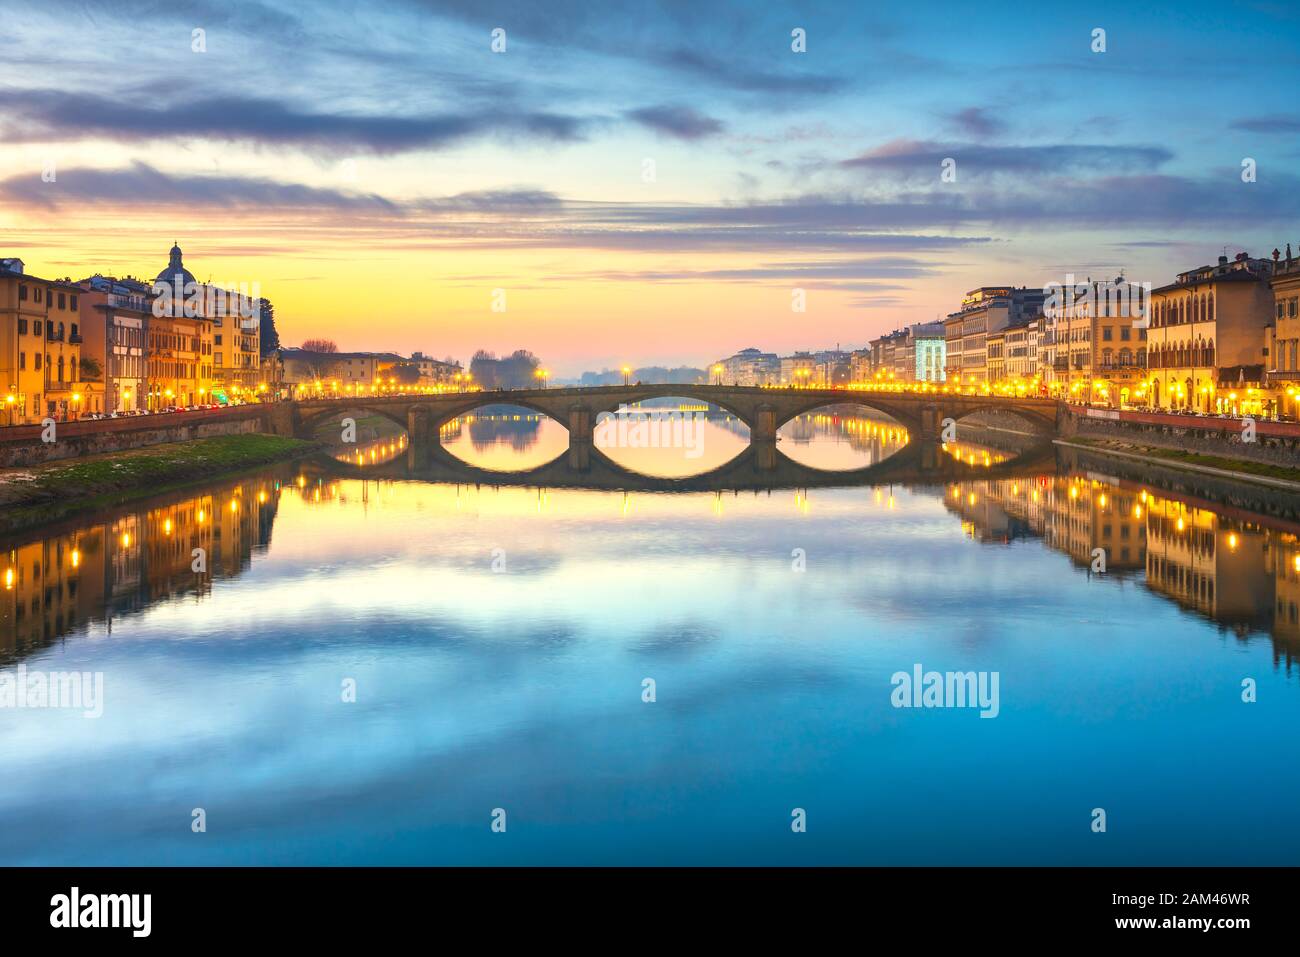 Florenz, Ponte alla Carraia mittelalterliche Brücke Wahrzeichen an Arno bei Sonnenuntergang. Toskana, Italien. Stockfoto